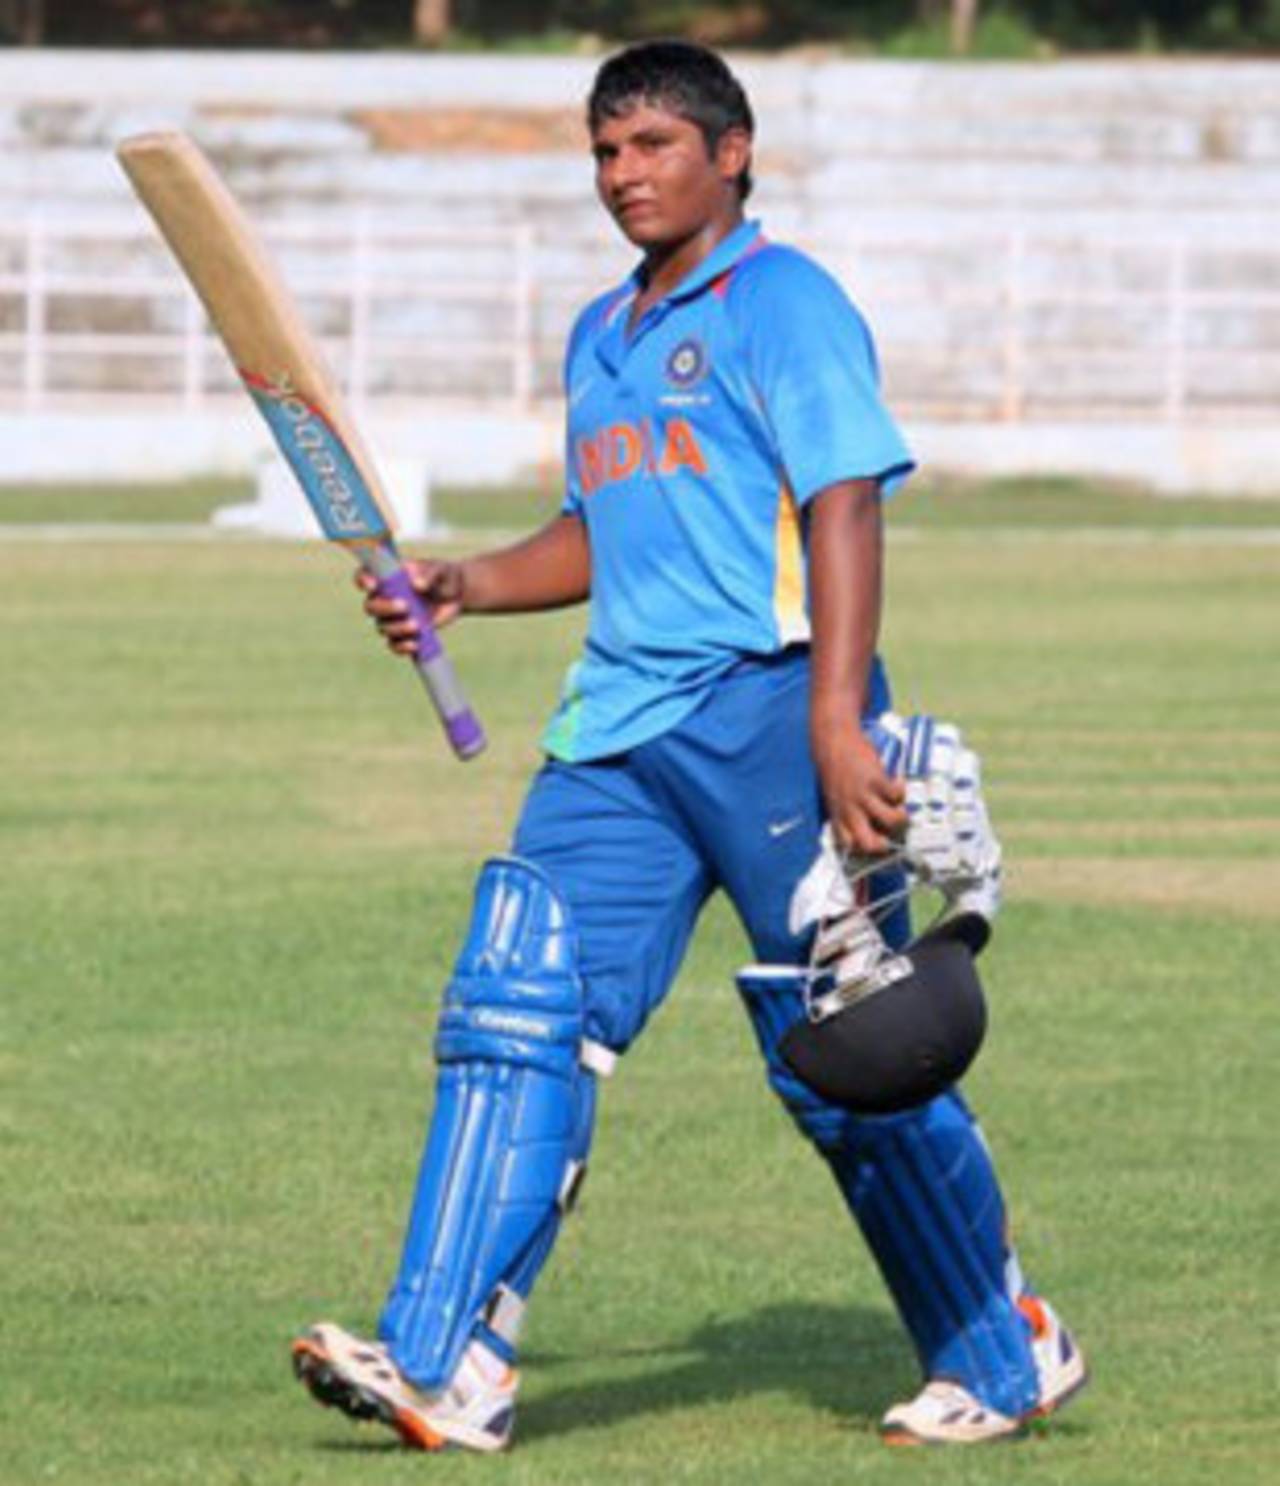 Sarfaraz Khan scored a 66-ball 100 against South Africa in the quadrangular series last year in Visakhapatnam&nbsp;&nbsp;&bull;&nbsp;&nbsp;BCCI